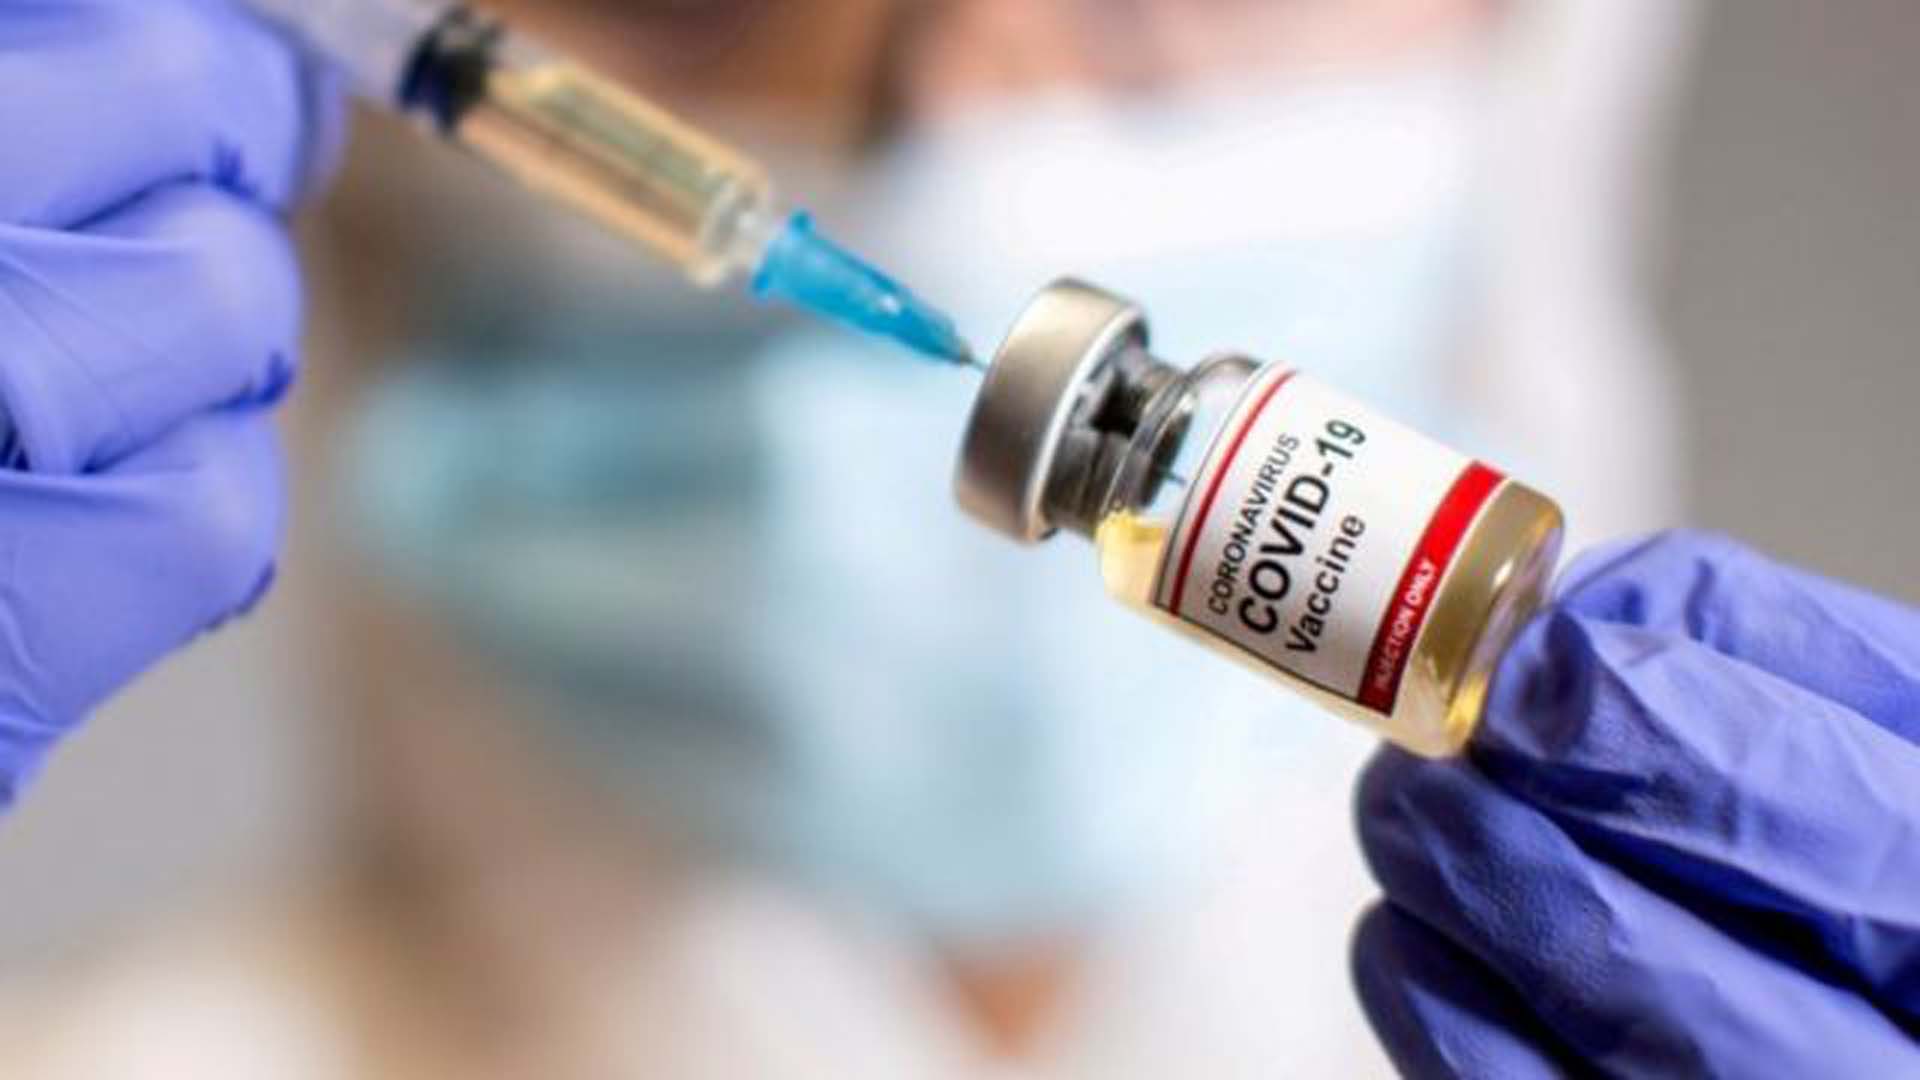 İspanya'da Covid-19 aşısı içinde yabancı bir cisme rastlandı! bunun üzerine 764 bin Moderna aşısının geri çekildi